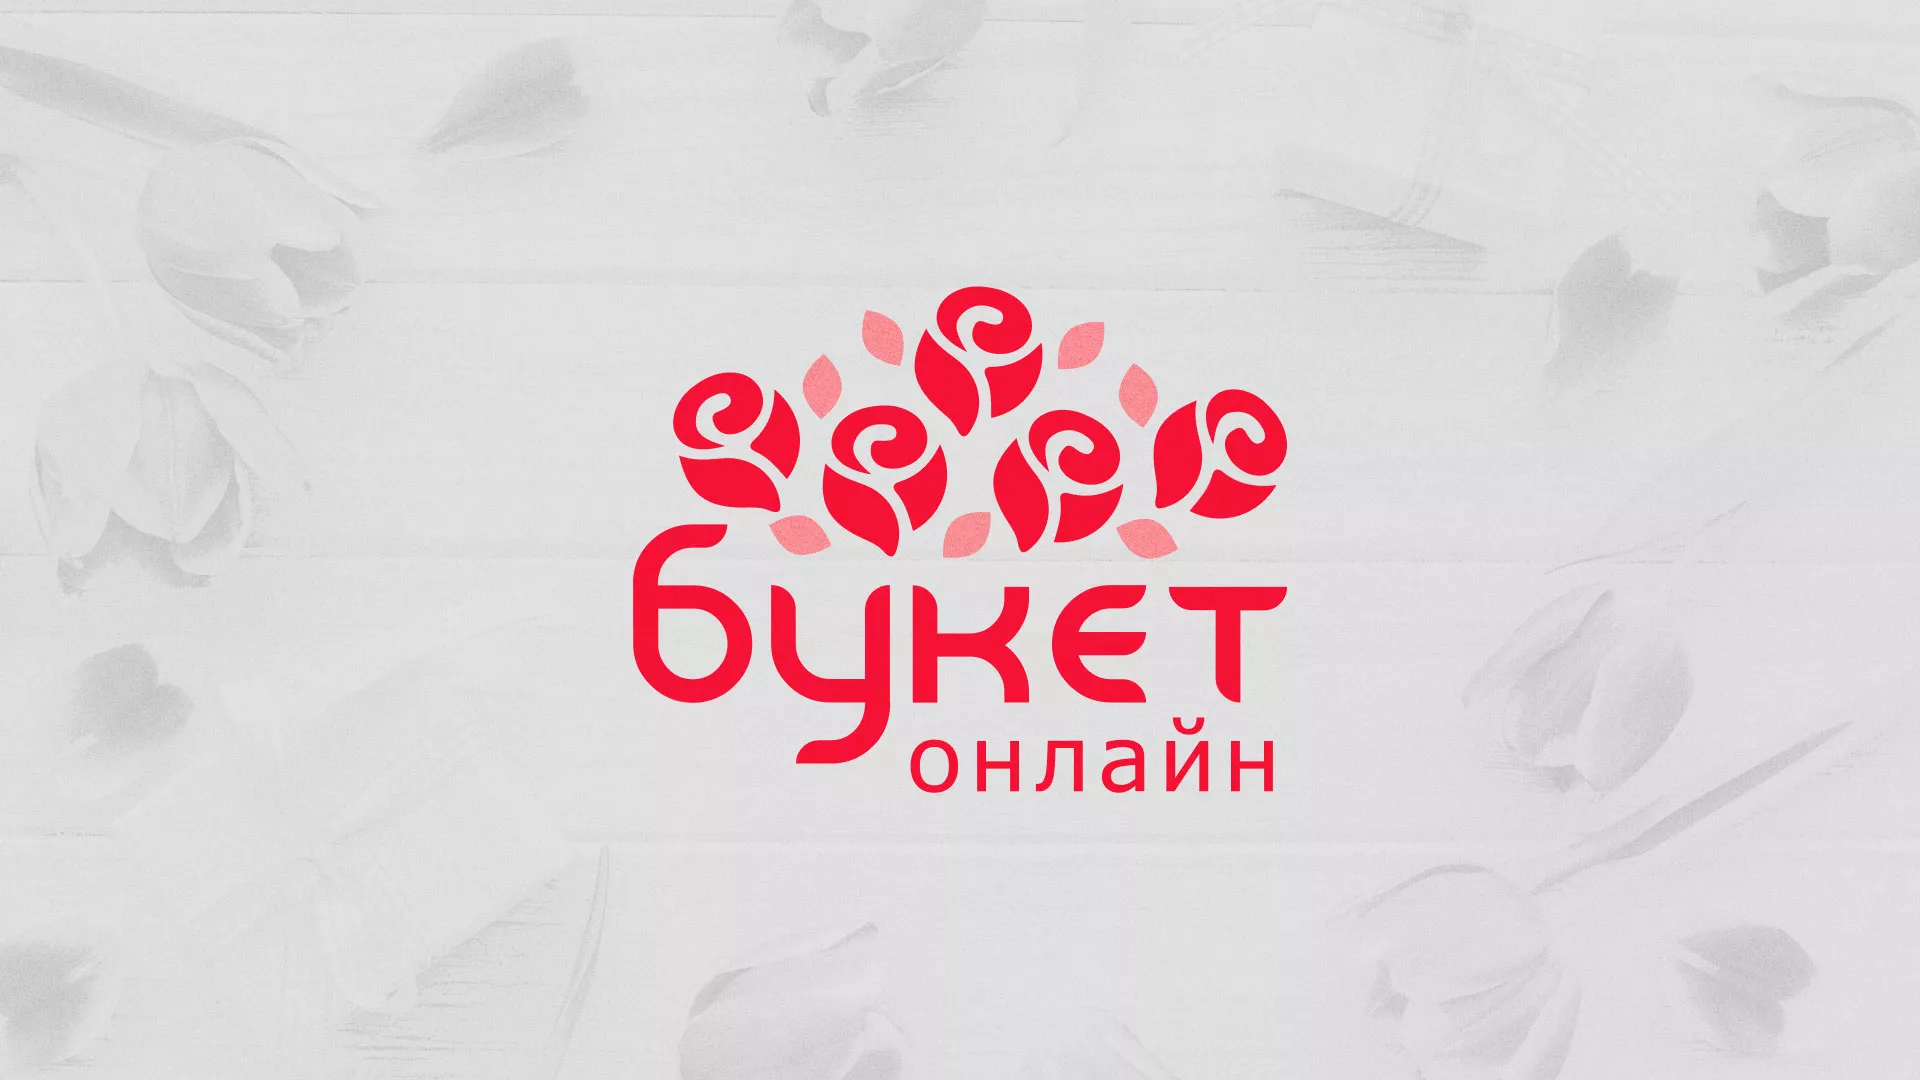 Создание интернет-магазина «Букет-онлайн» по цветам в Славянске-на-Кубани